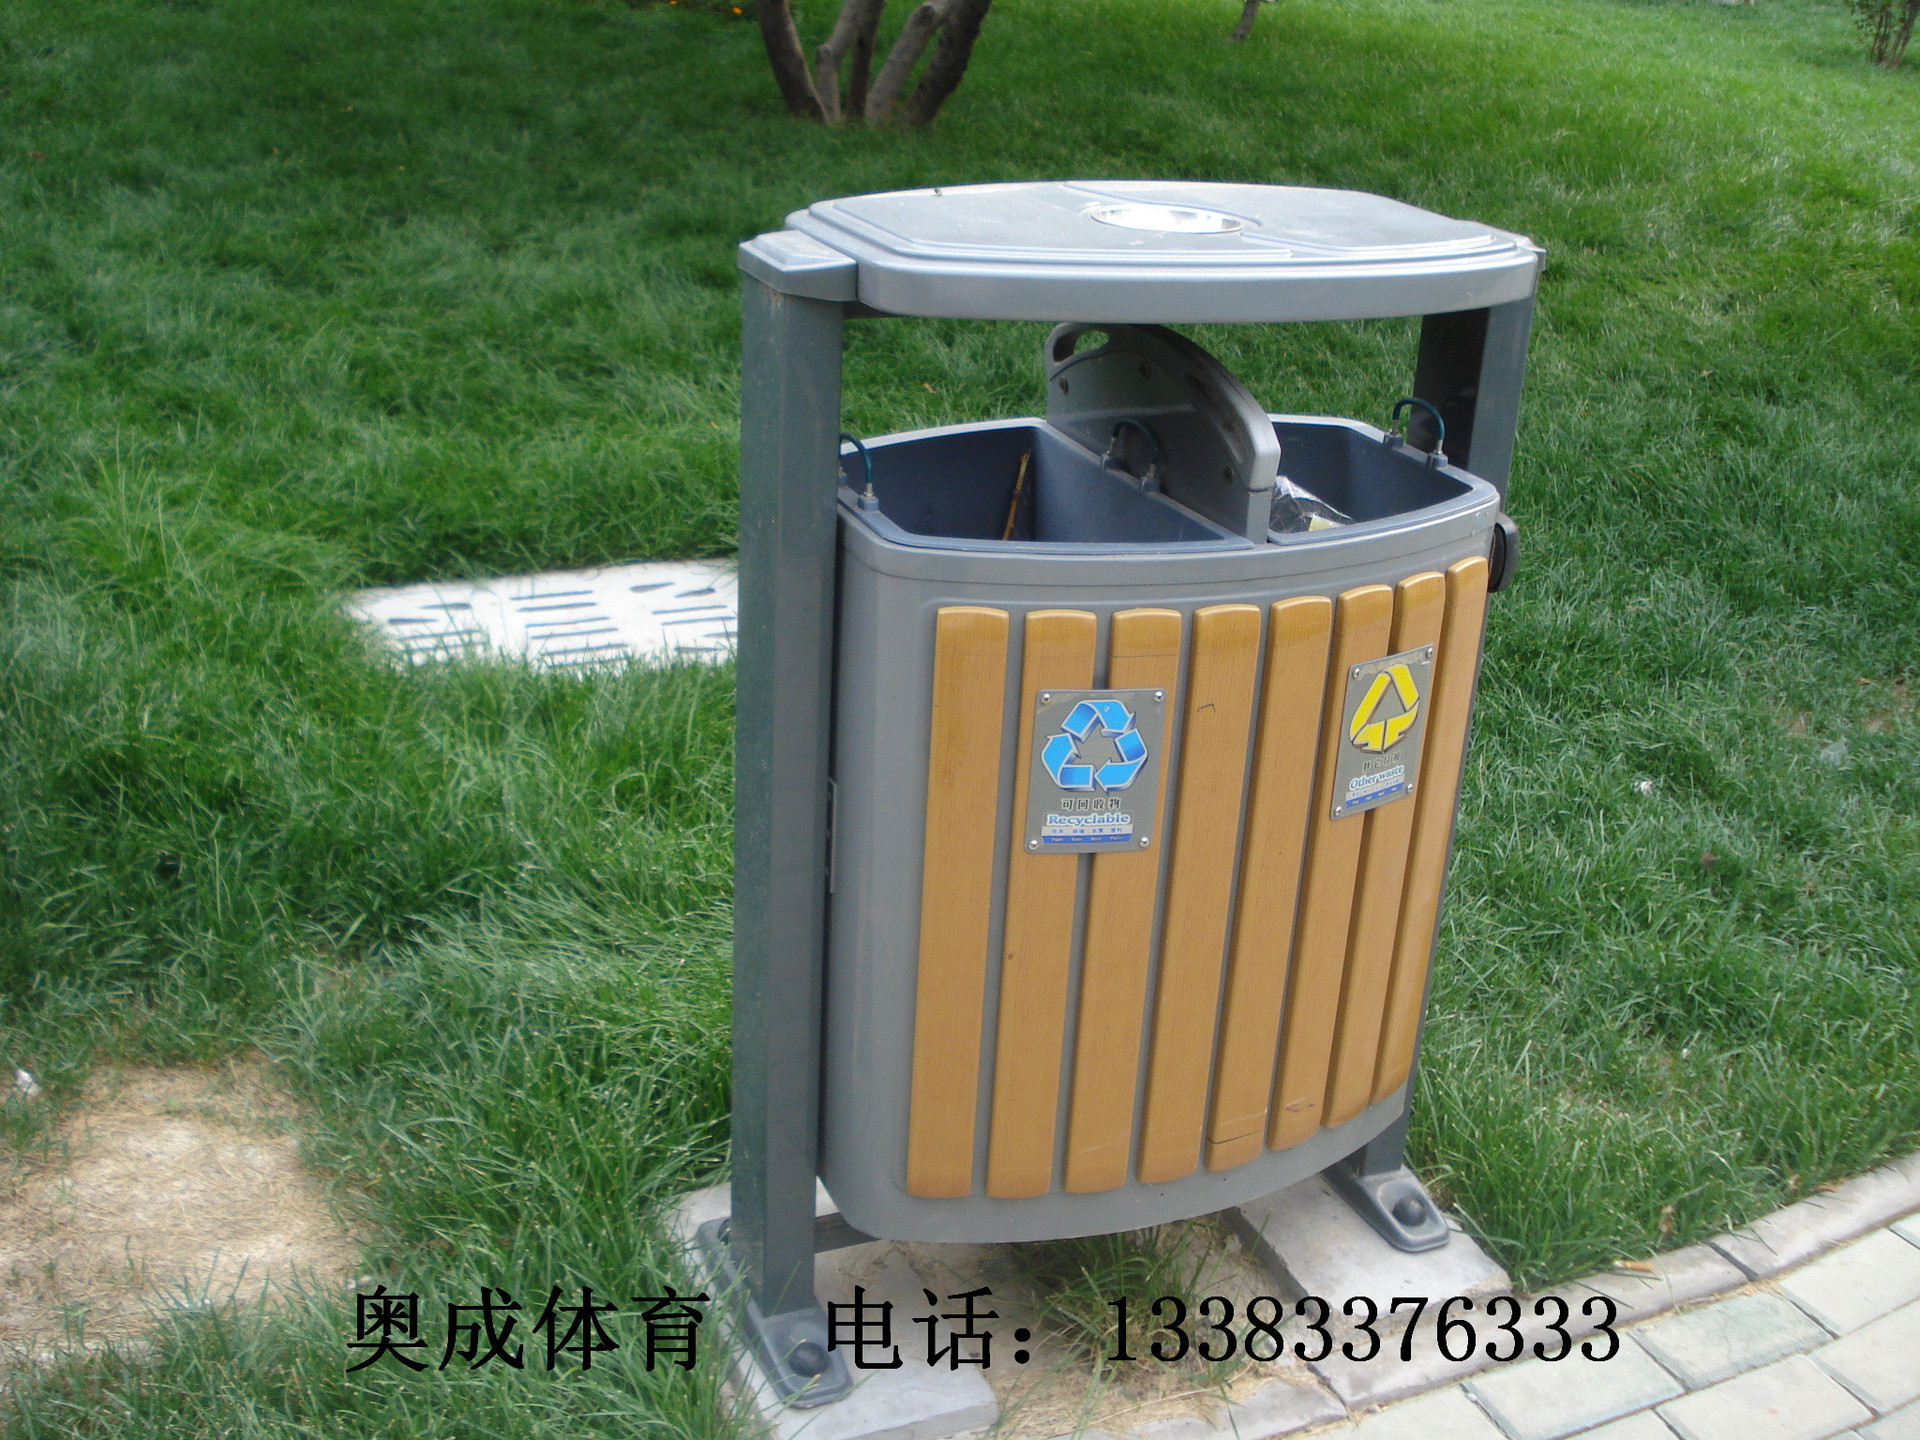 环卫垃圾桶/果皮箱/塑料垃圾桶价格/不锈钢垃圾桶厂家/分类拉圾桶示例图9